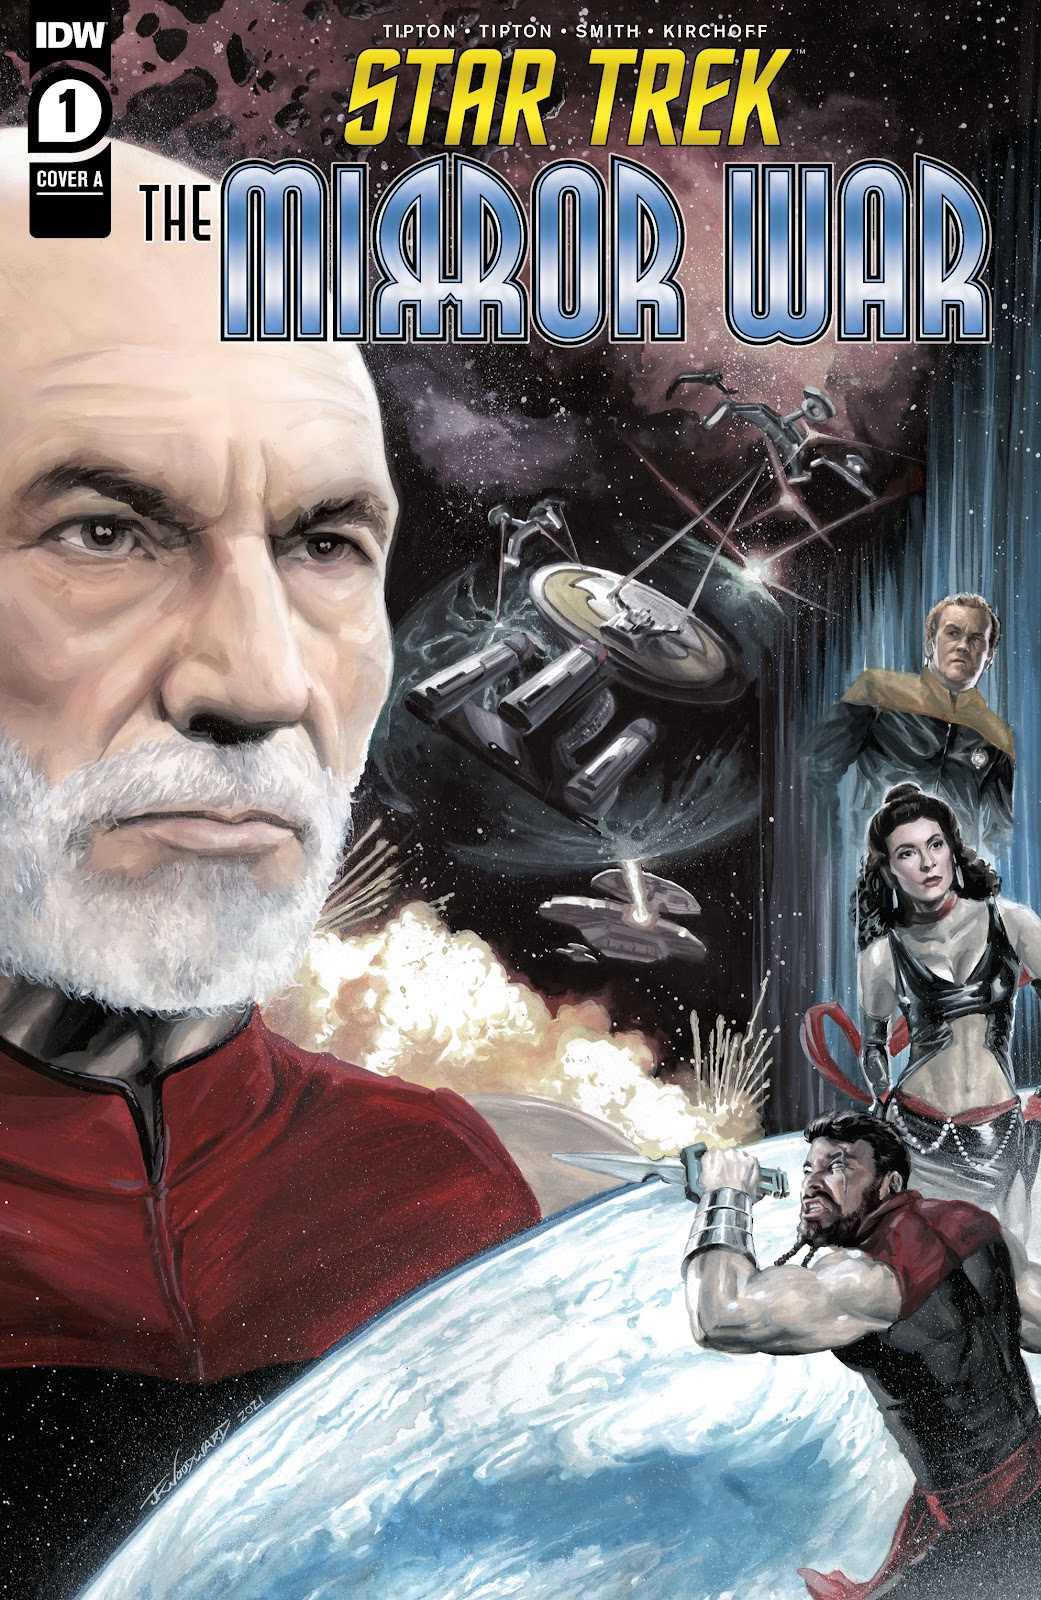 The Mirror War Picard.